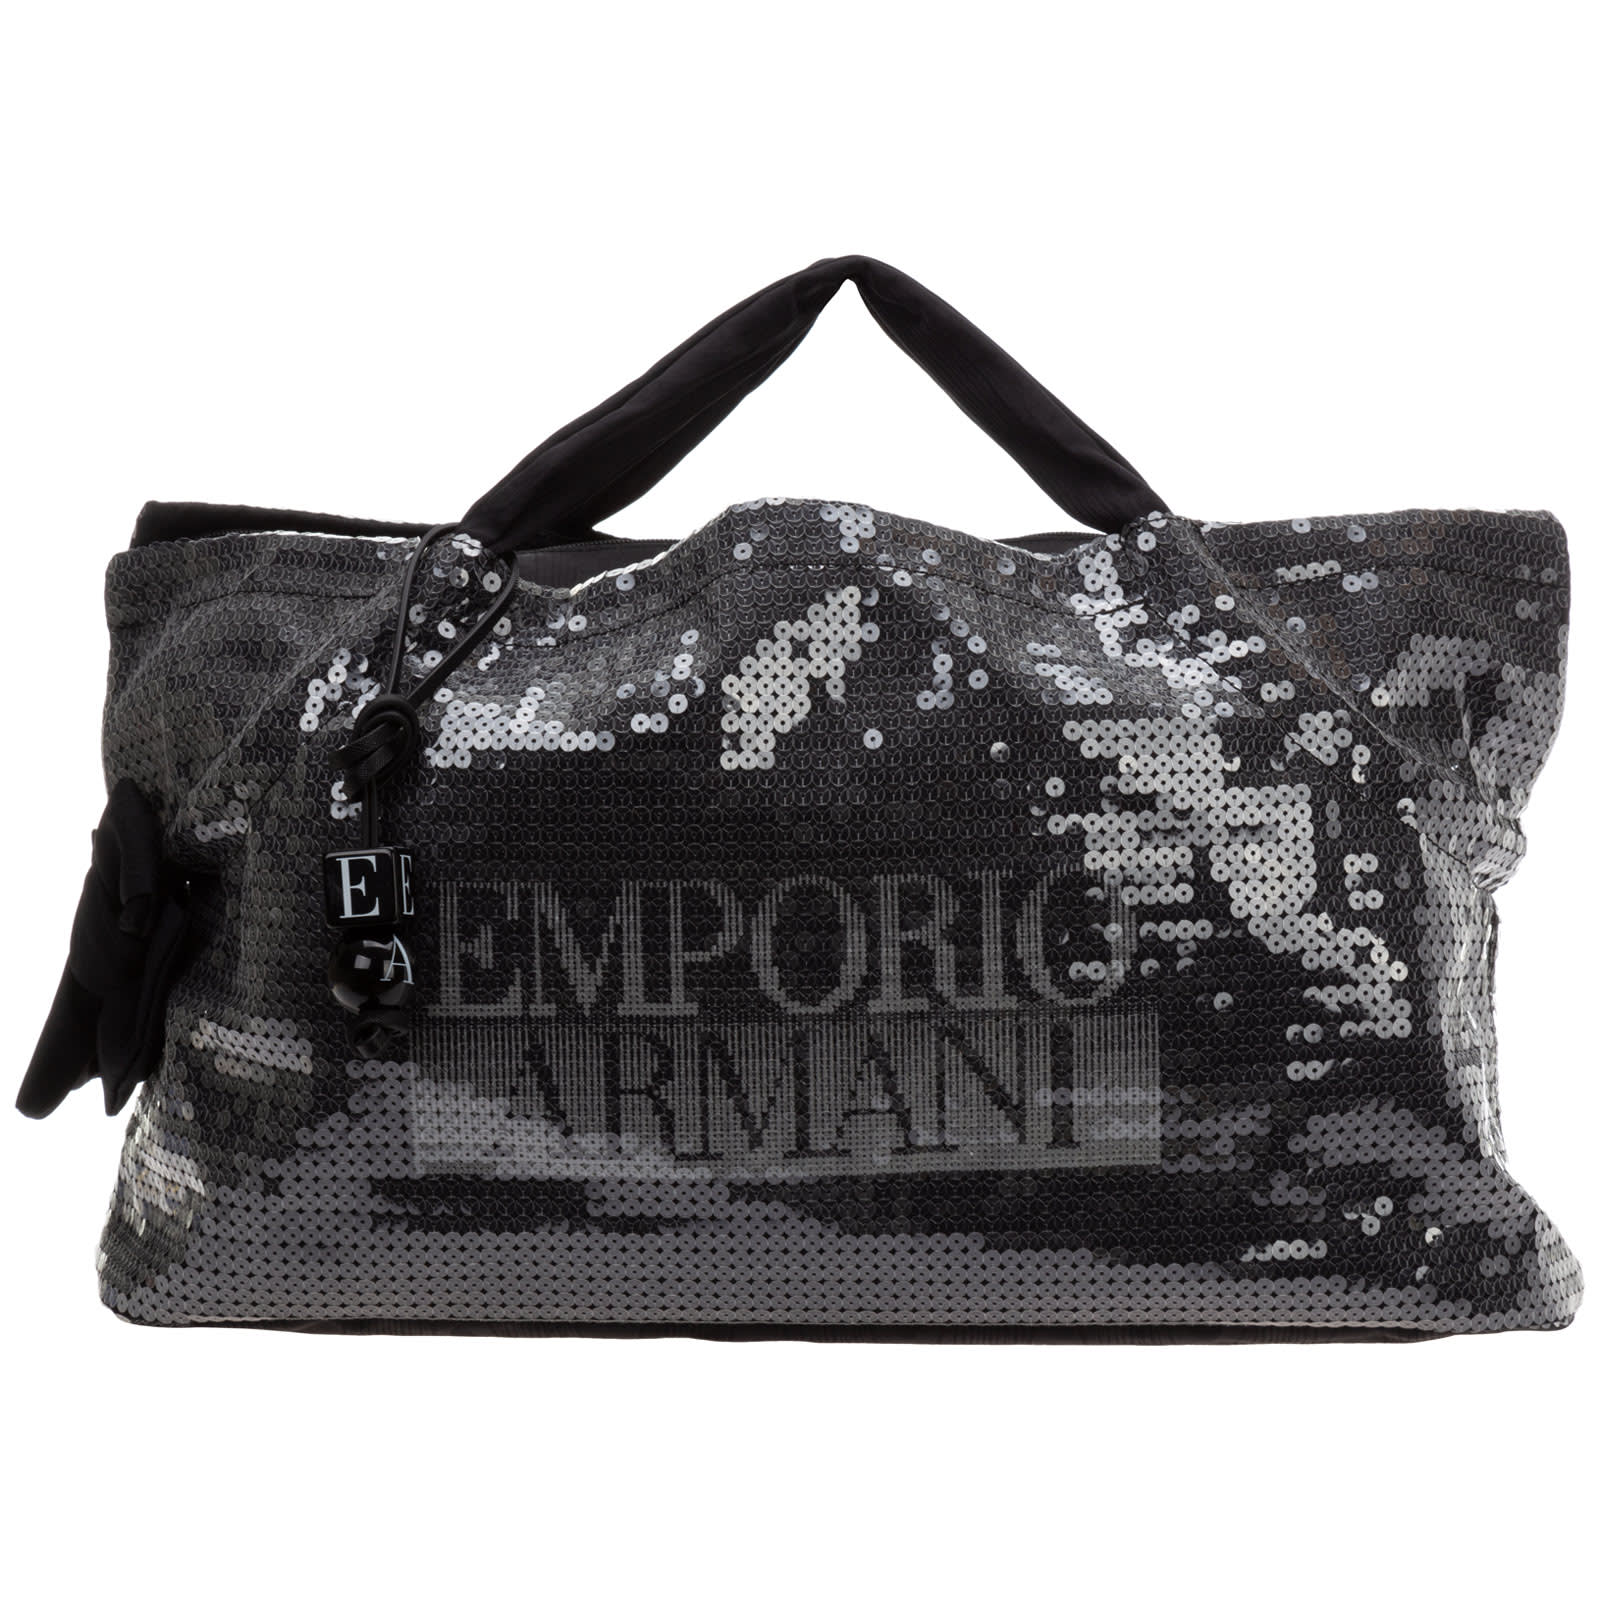 Emporio Armani Open Handbags